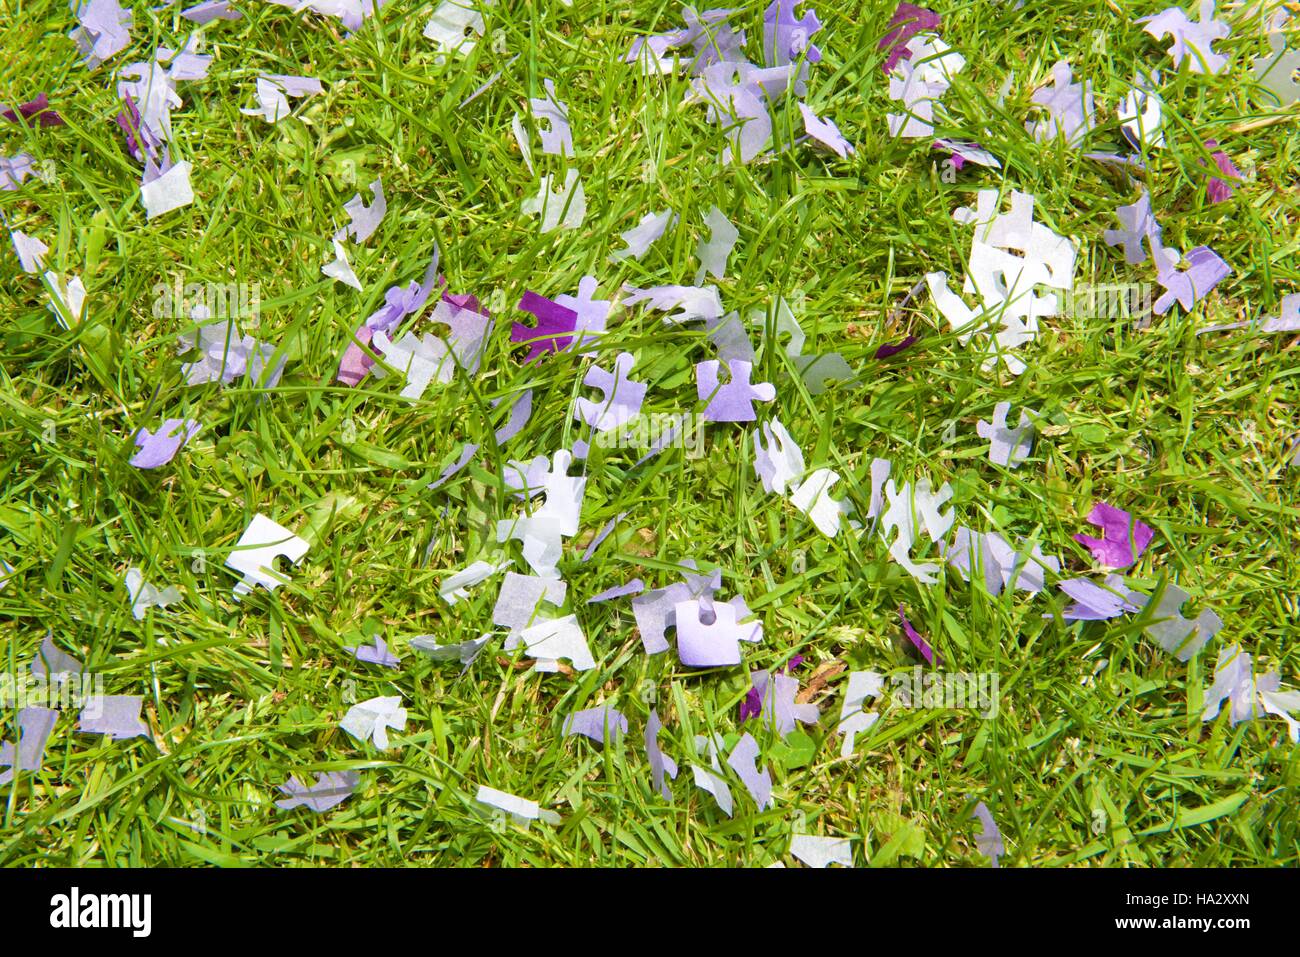 Confetti on grass Stock Photo